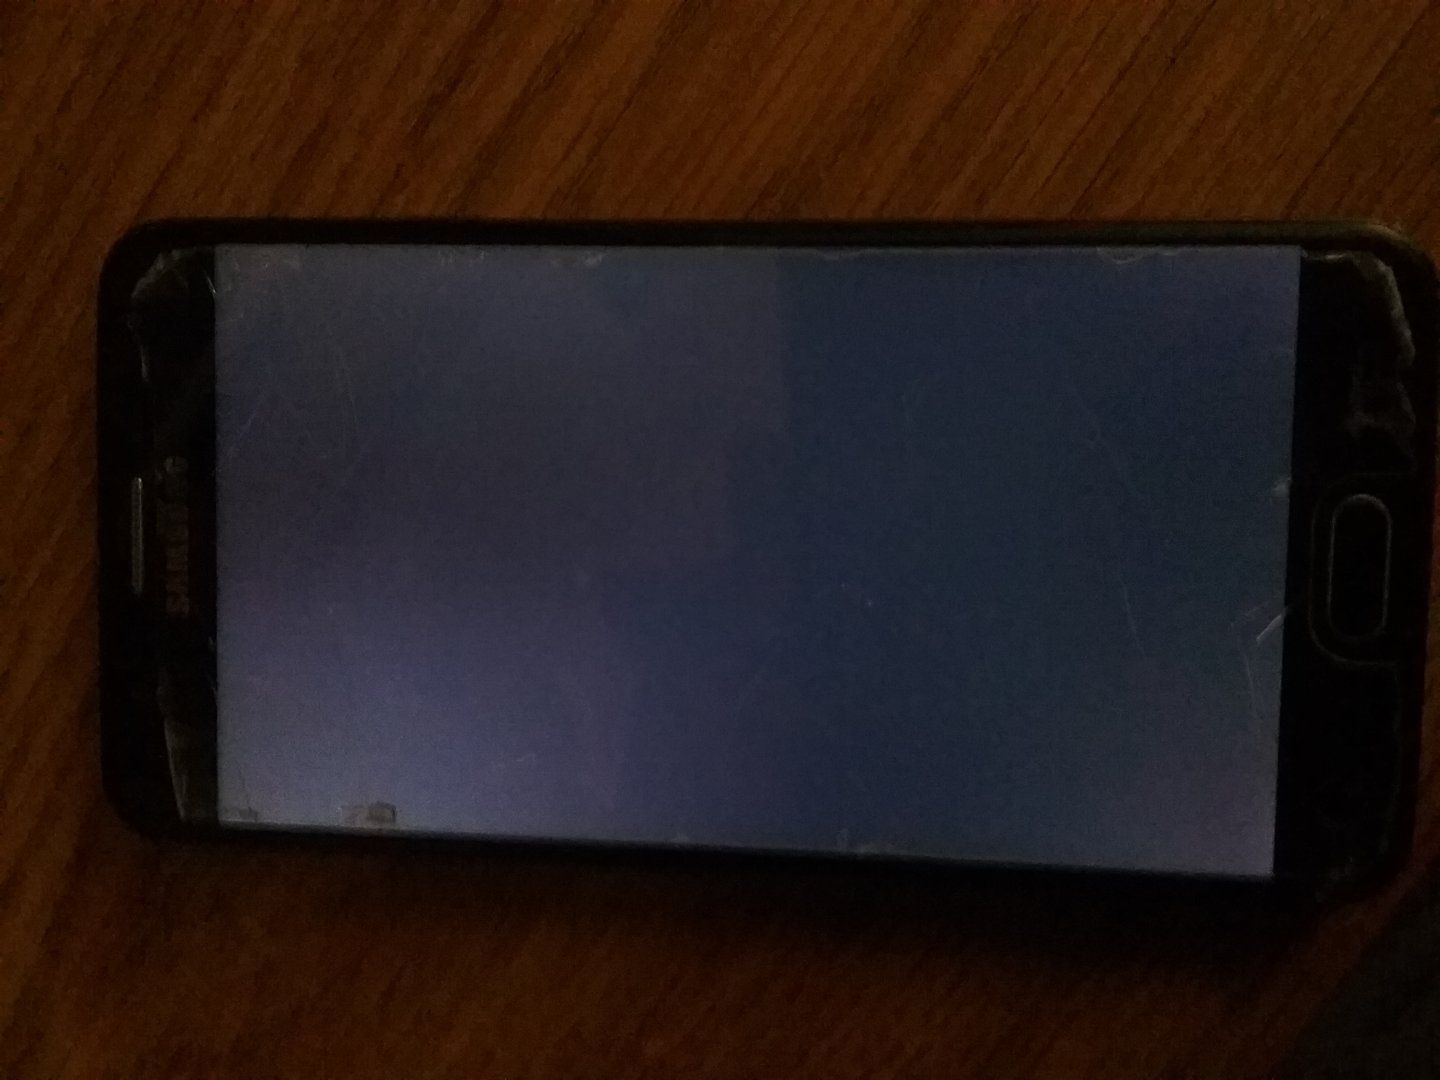 Samsung Galaxy J7 Prime G610F telefona ROM kuruluyor ama açılmıyor |  Technopat Sosyal